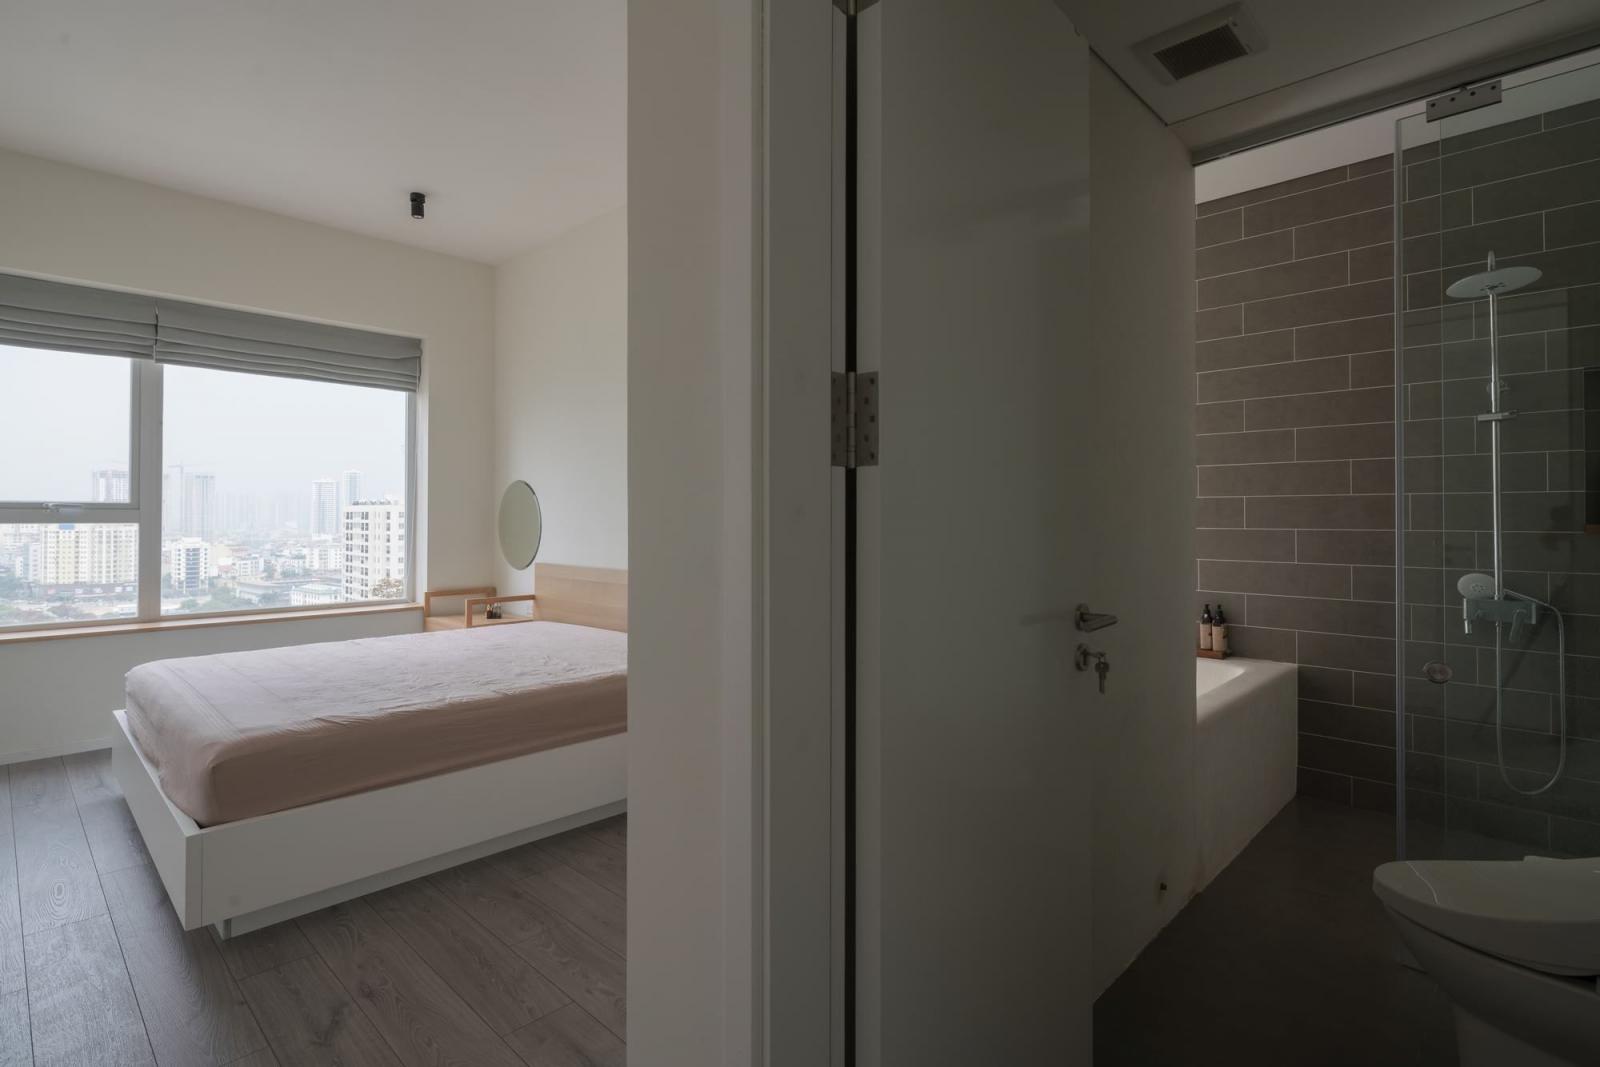 Hình ảnh phòng ngủ được bố trí liền kề với phòng tắm tiện nghi trong căn hộ 2 tầng